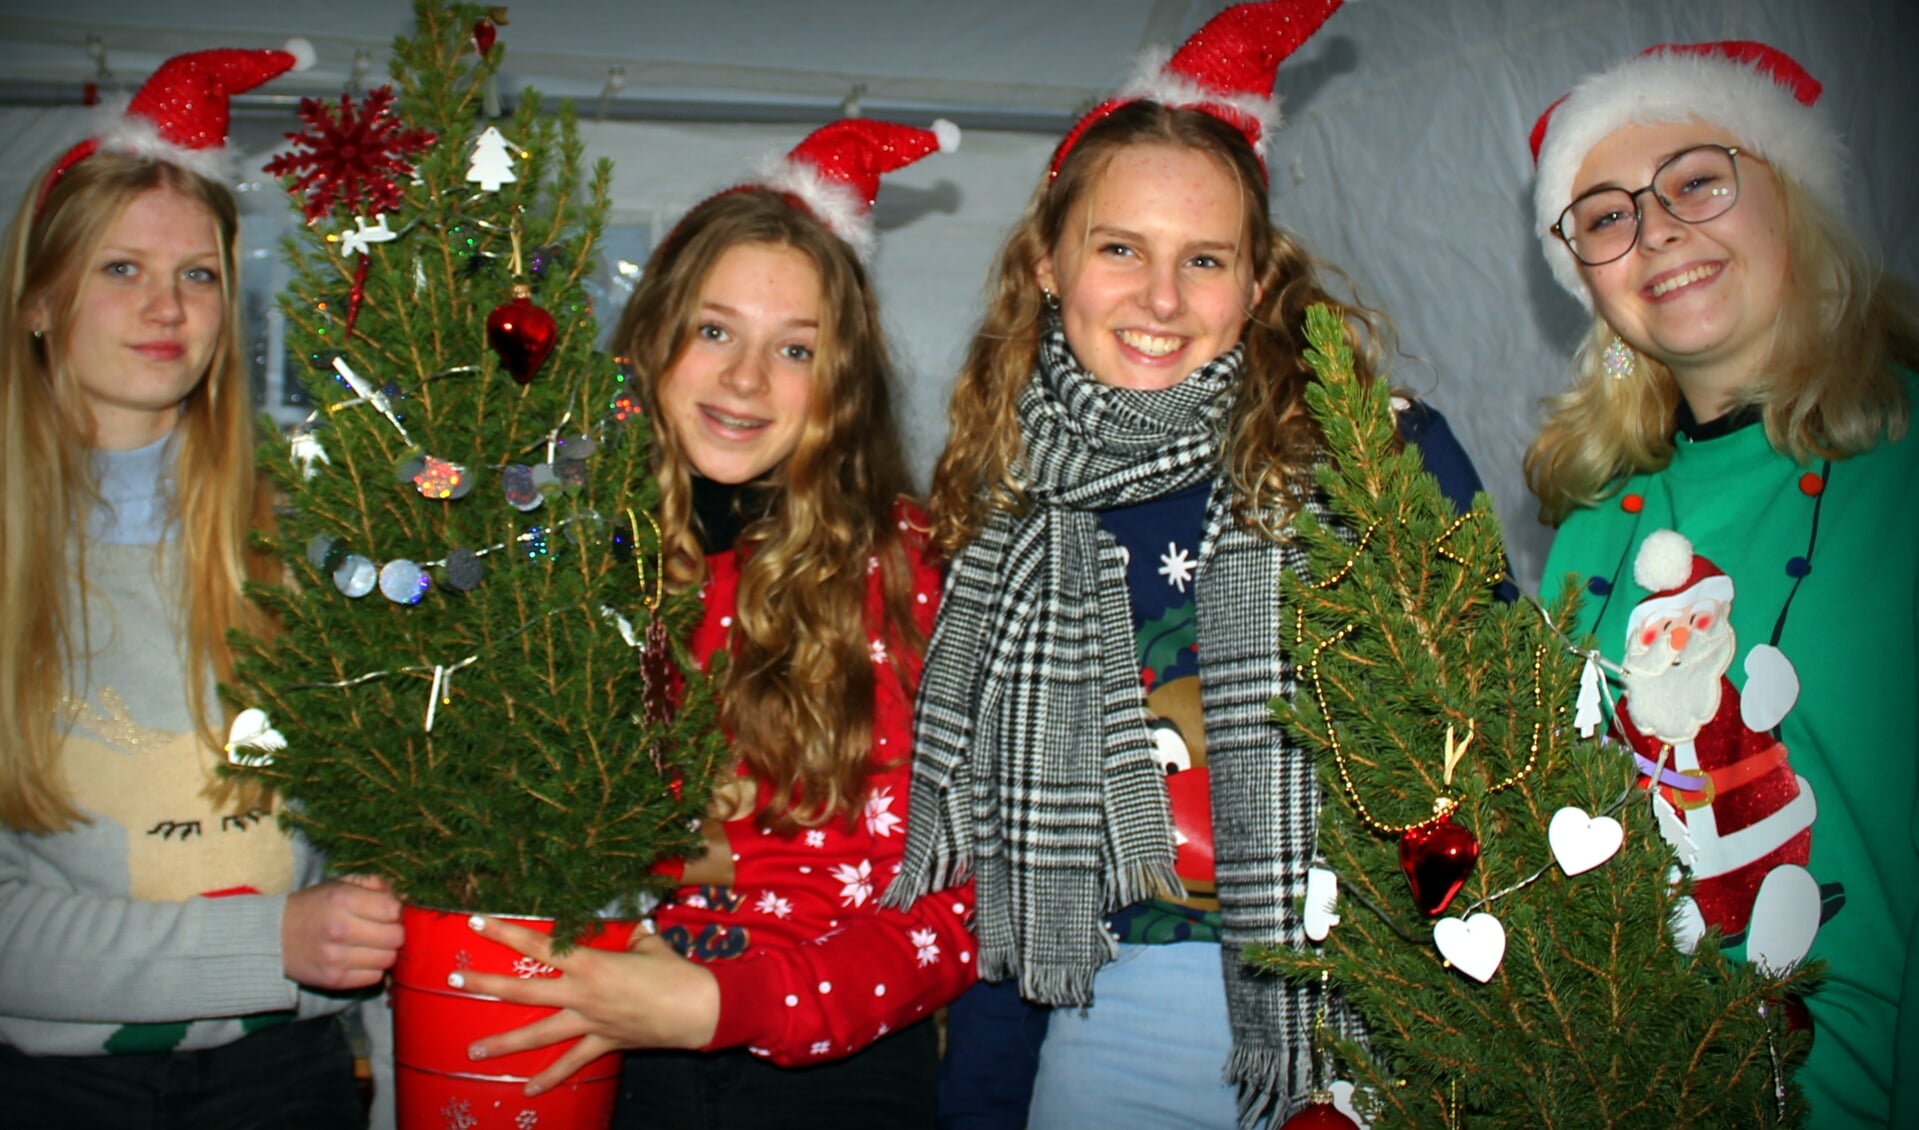 De dames van Blonde Kerst in hun kraam: vlnr Carlijn Kreft, Joëlle Harkes, Stella Smith en Jet de Haan.